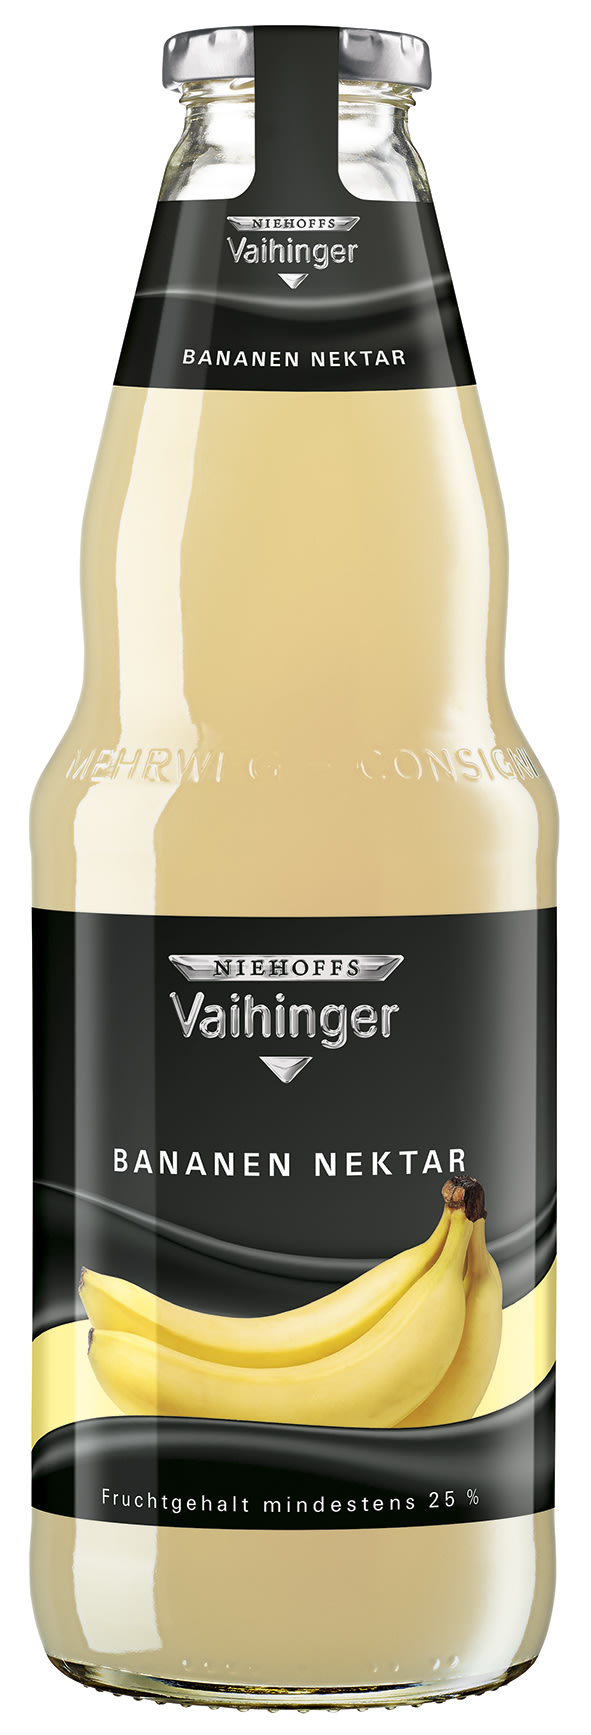 Niehoffs Vaihinger Bananen Nektar Kasten 6 x 1 l Glas Mehrweg